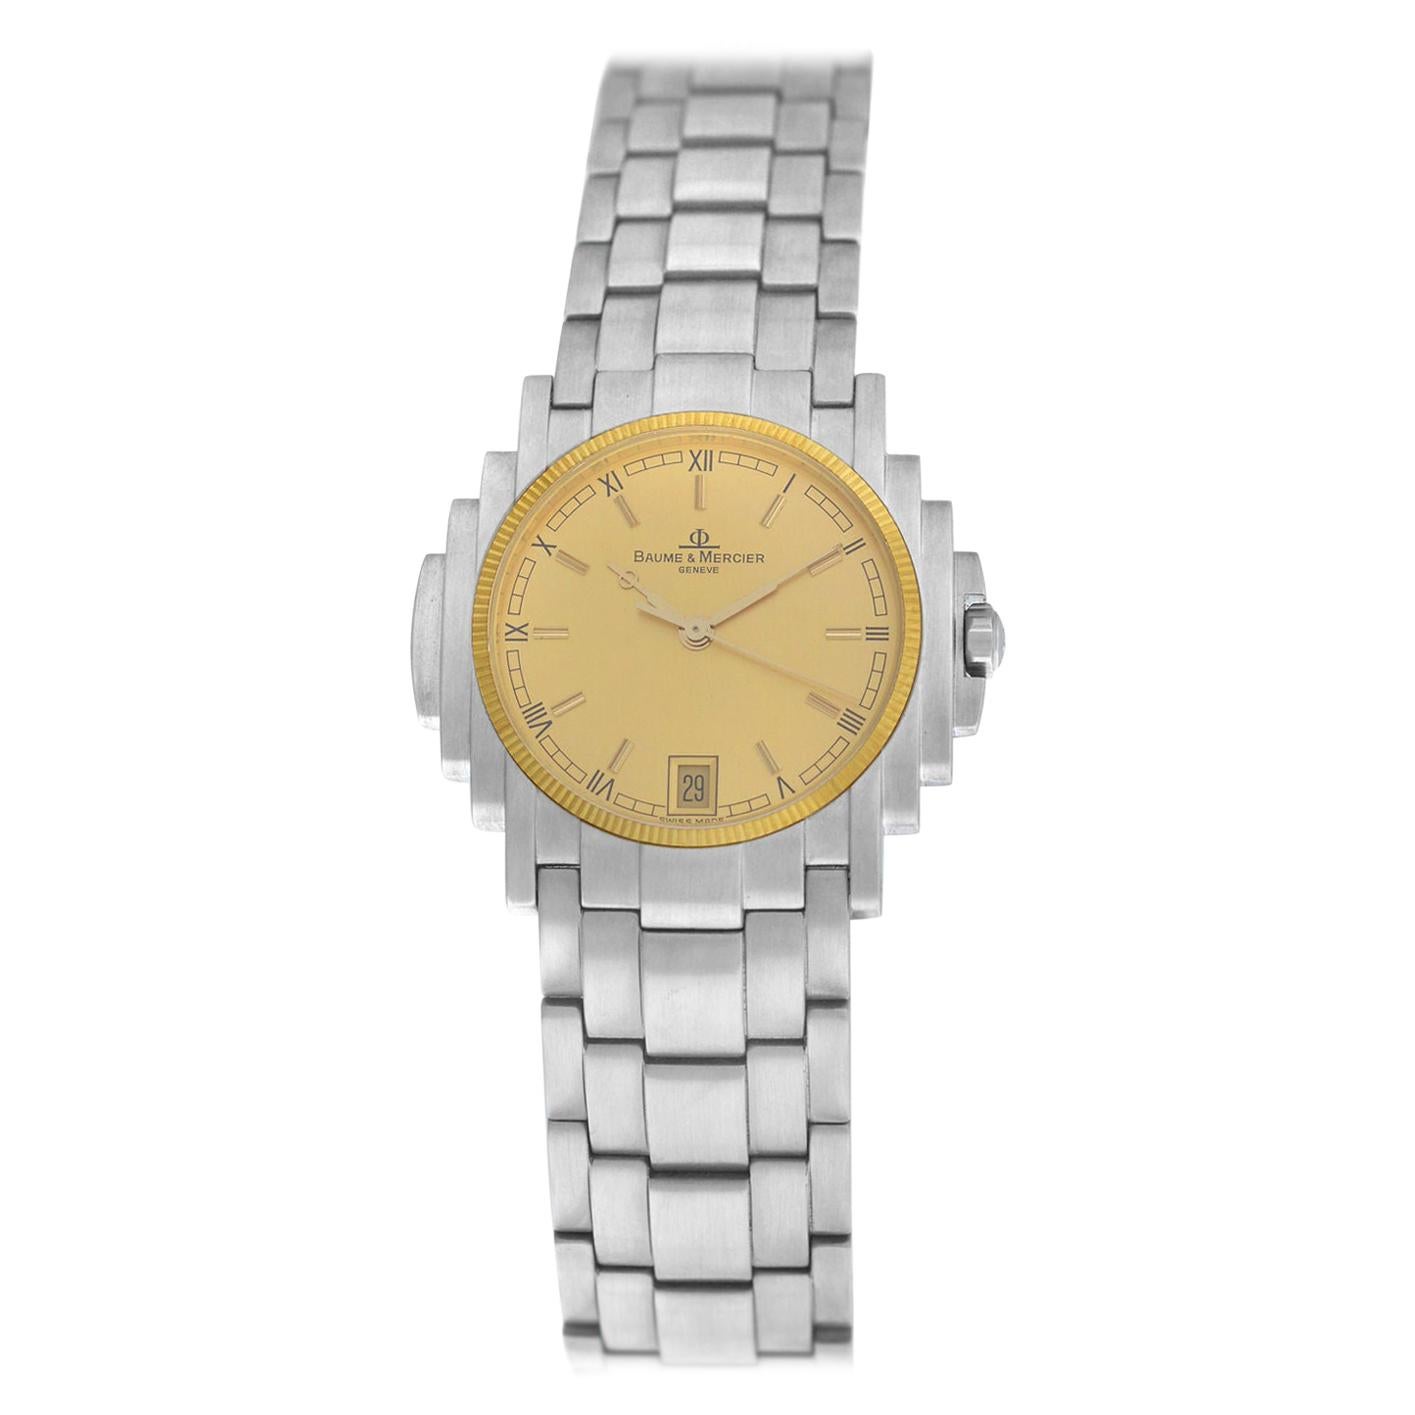 Unisex Baume & Mercier Shogun 5136.018.3 Stainless Quartz Watch